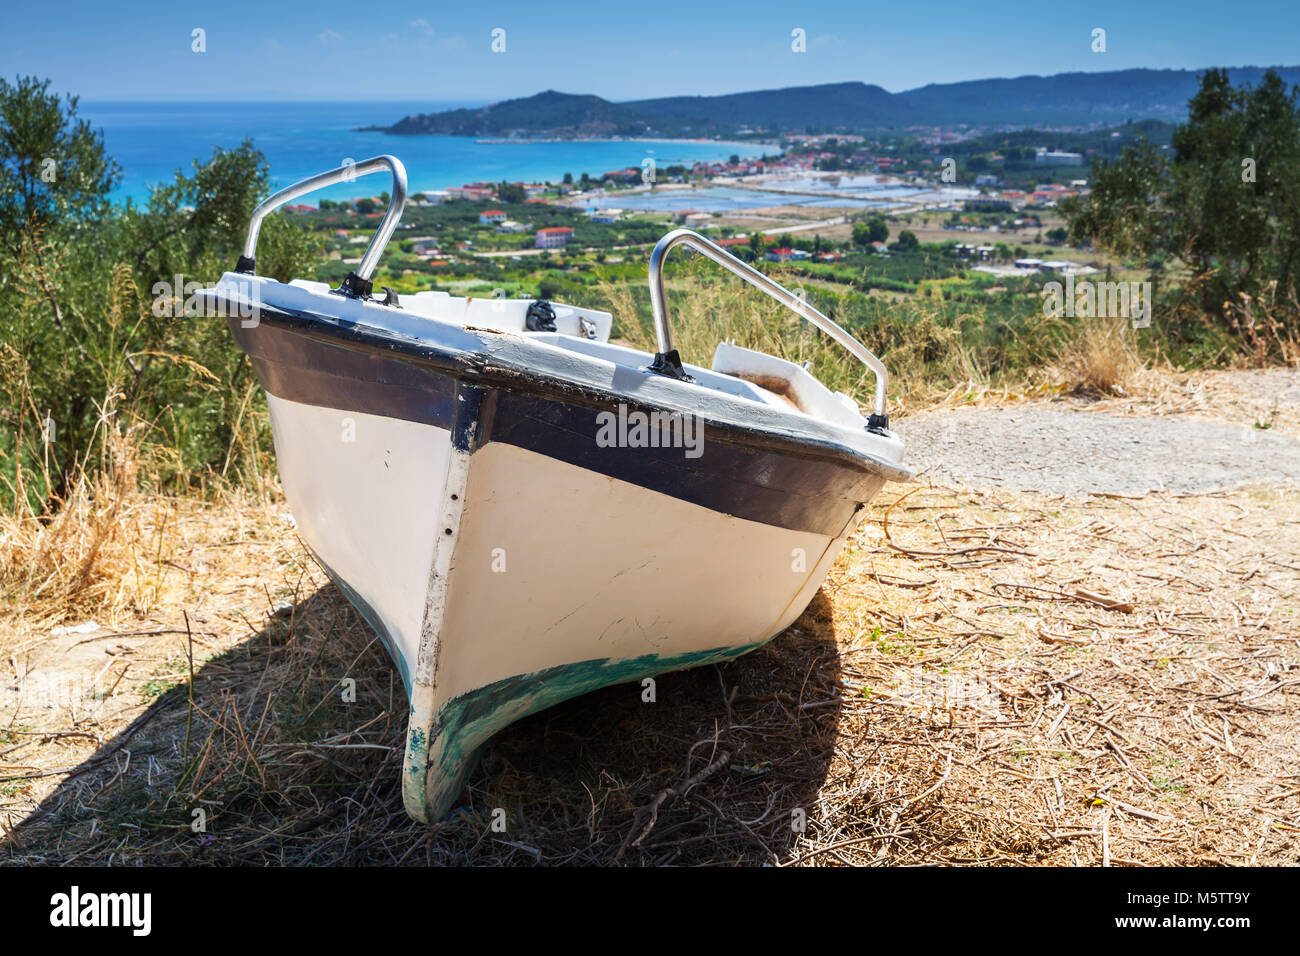 Alte kleine Fischerei Zeile Boot an der Küste. Sommer Landschaft der Insel Zakynthos, Griechenland Stockfoto